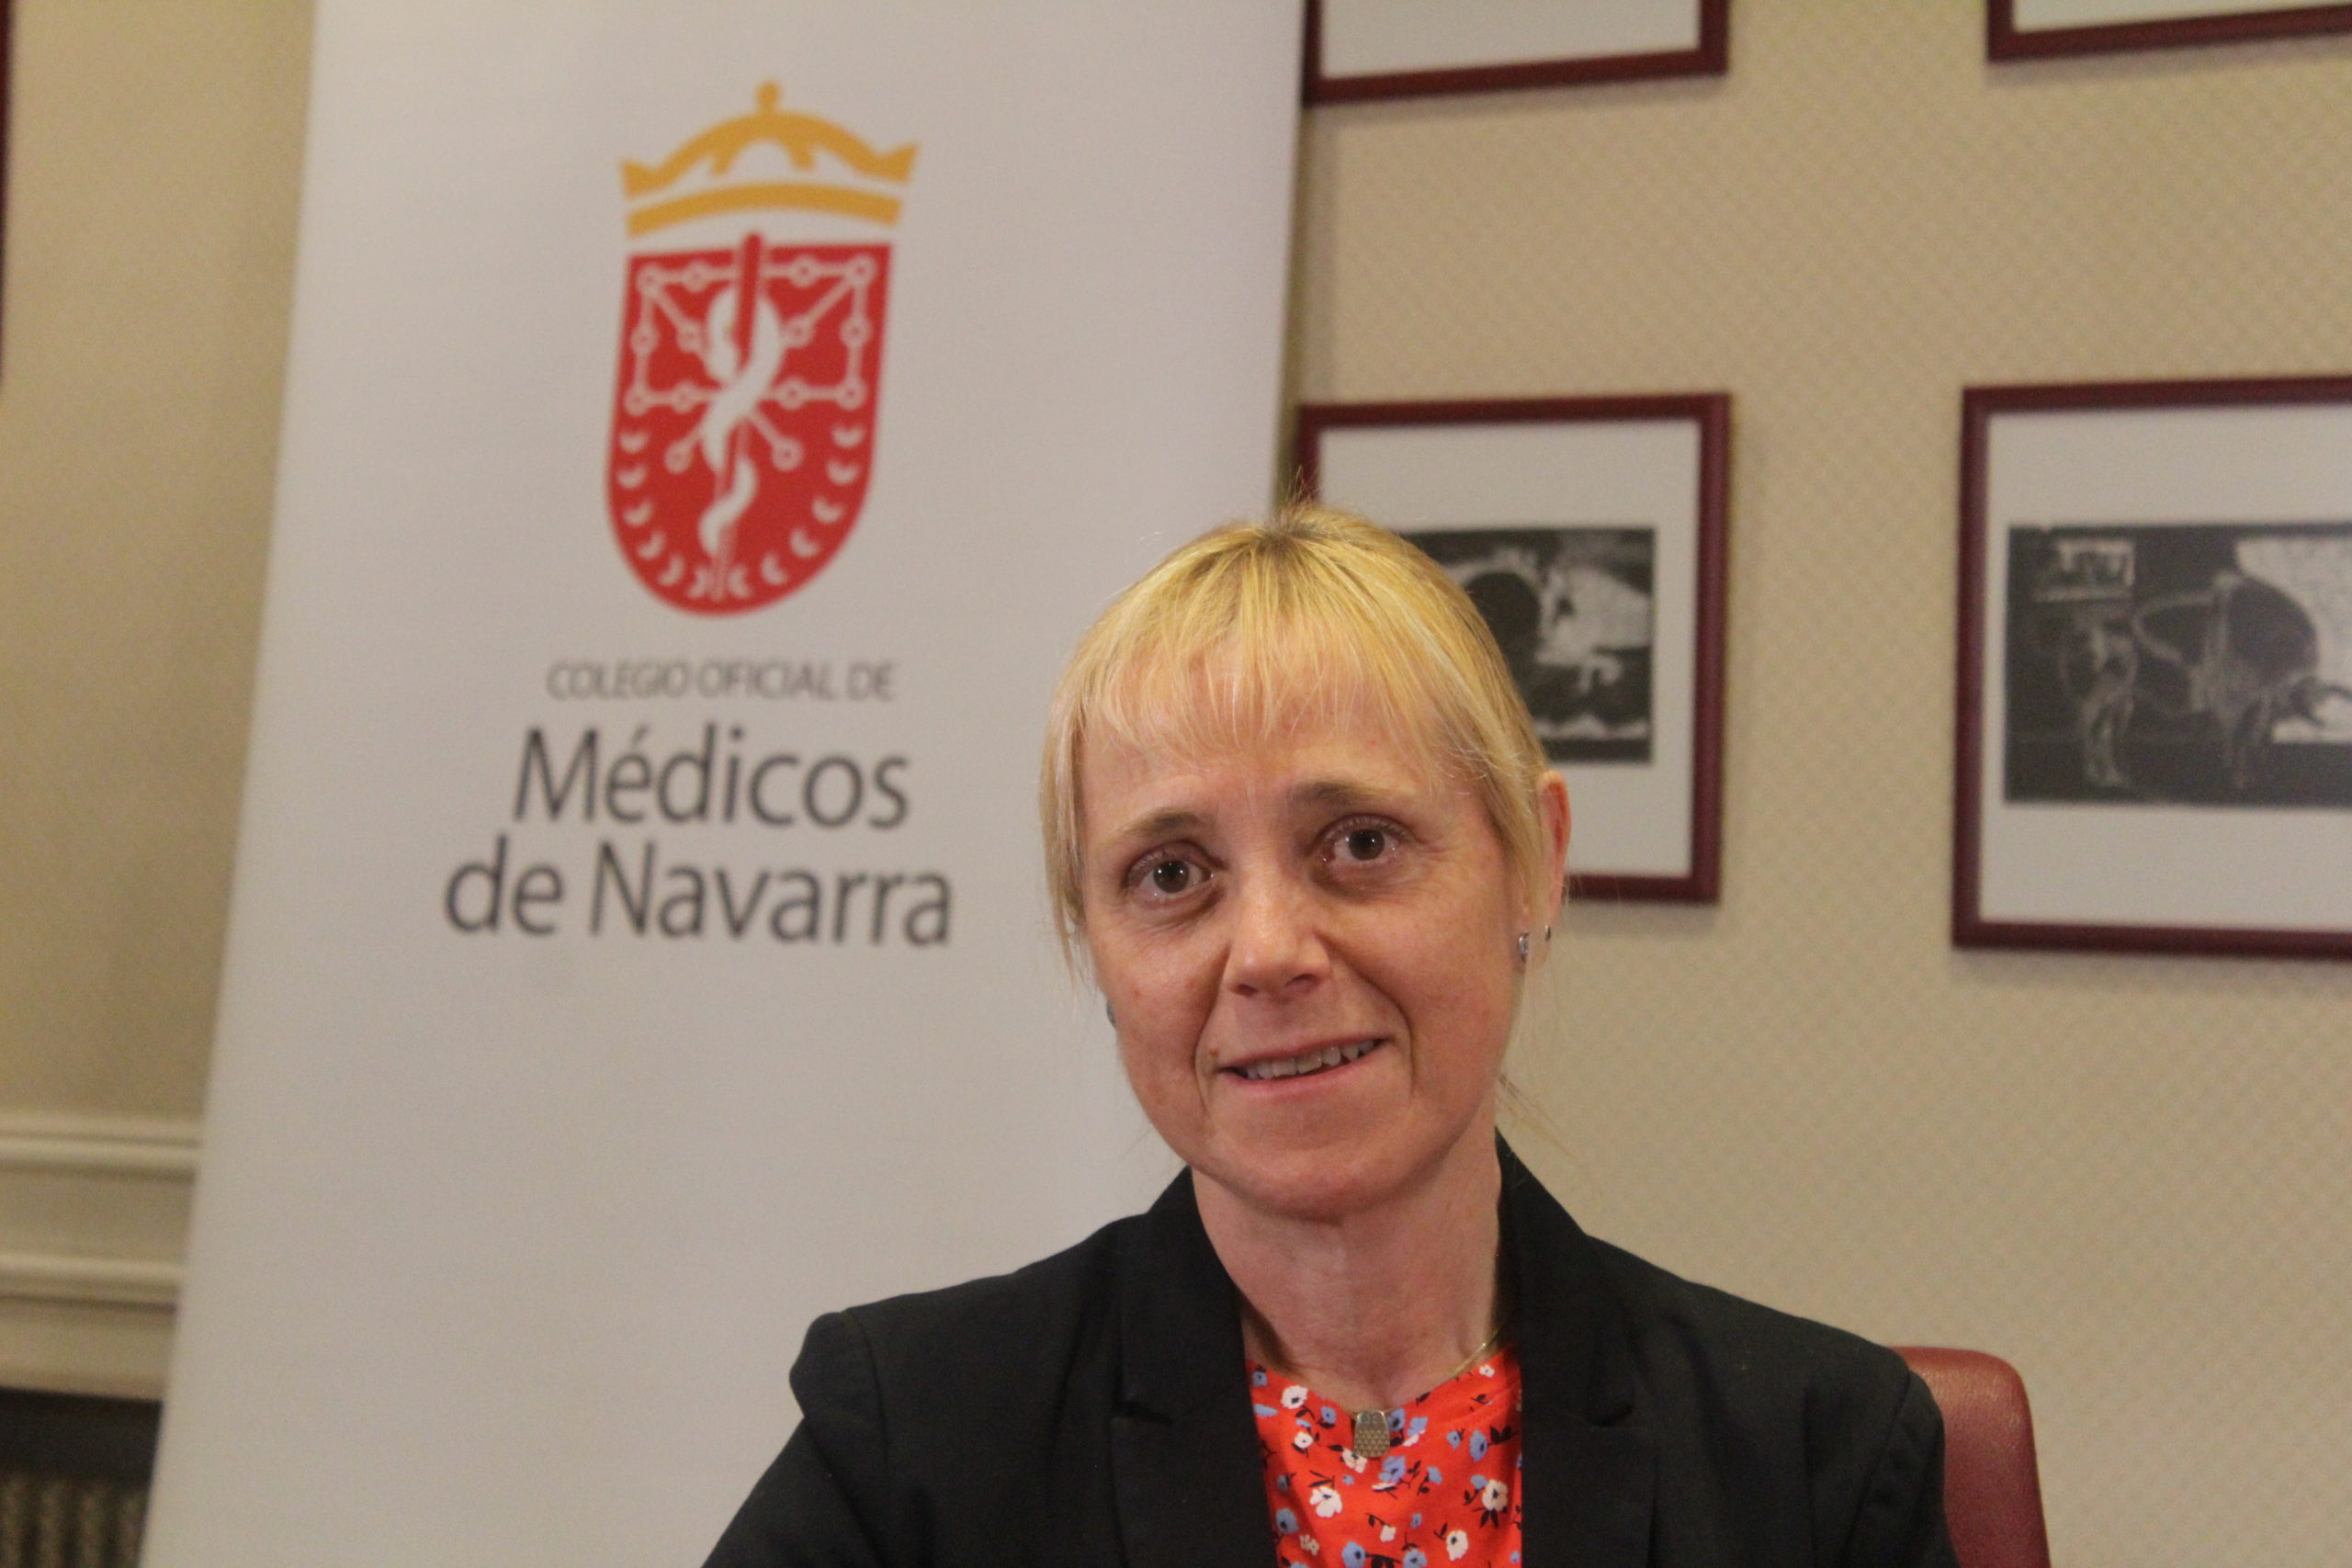 Dra. María Victoria Barcos: “El médico, en todos sus actos, debe dar prioridad a la seguridad y bienestar del paciente”.